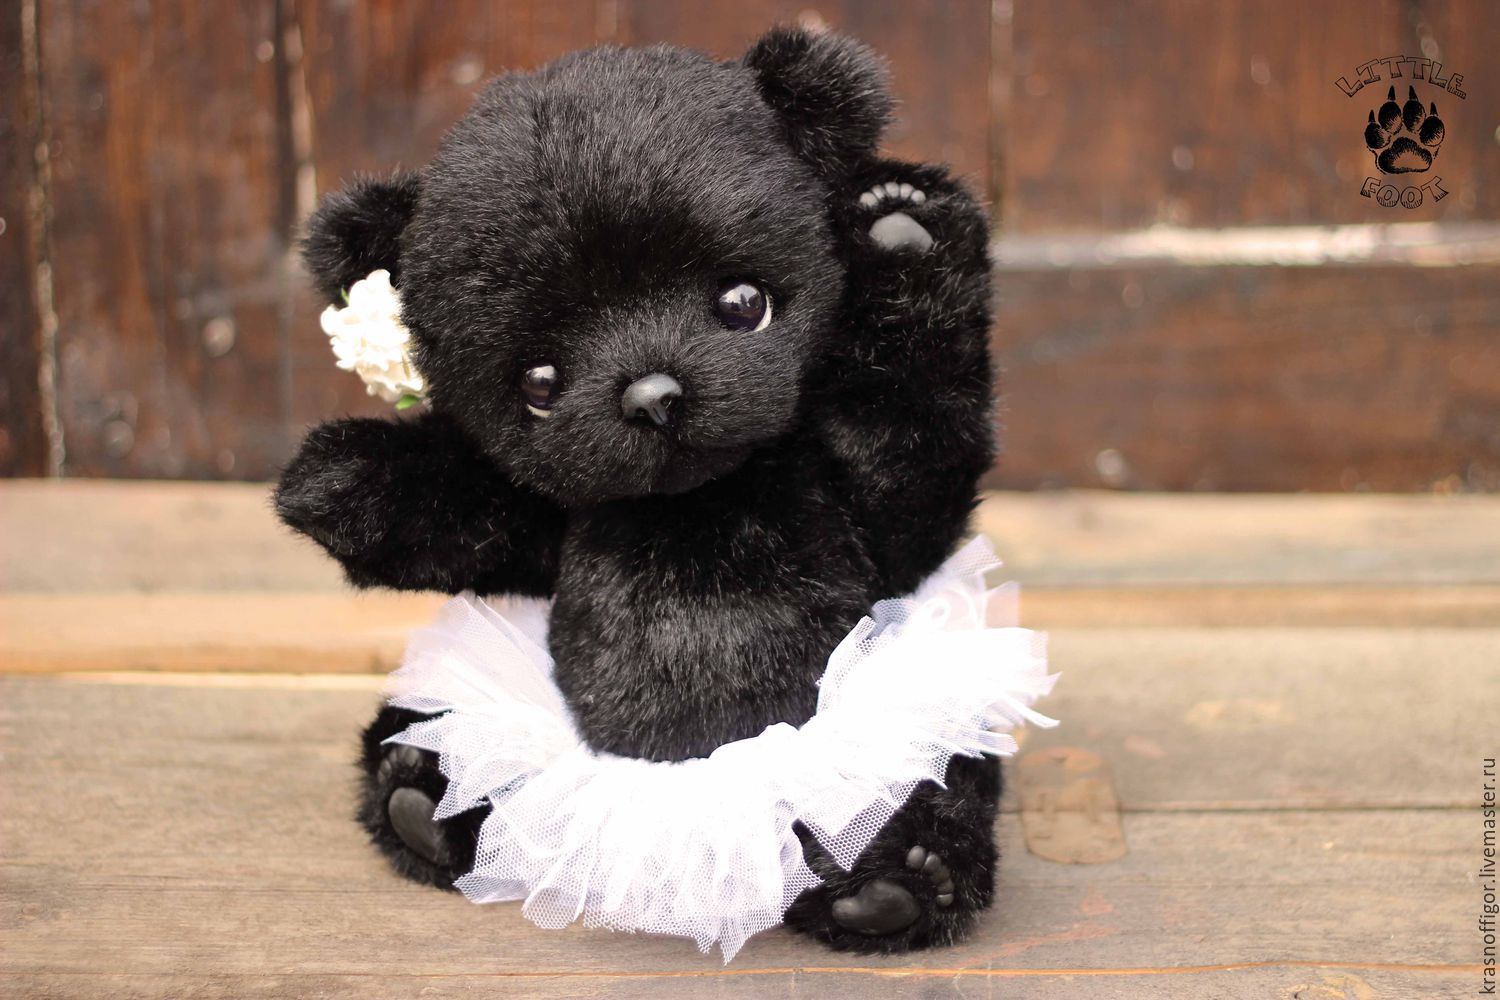 Черно плюшевая. Черный плюшевый мишка. Черный Медвежонок мягкая игрушка. Черный мишка Тедди. Чёрный медведь игрушка.